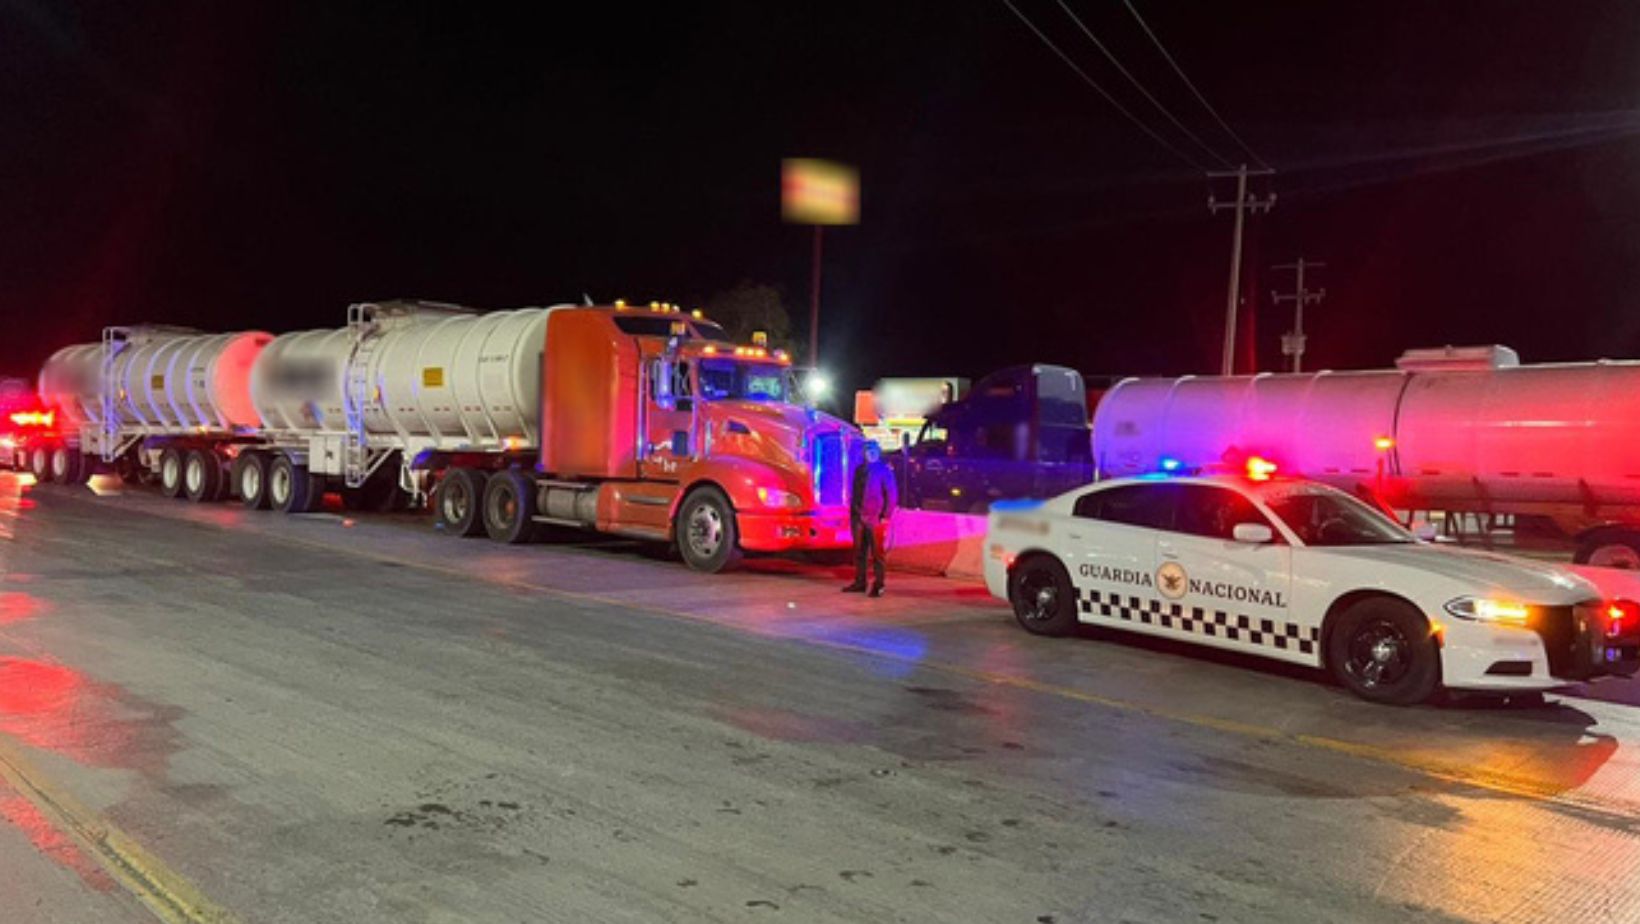 Guardia Nacional aseguró tractocamión con más de 60 mil litros de combustible ilegal en Nuevo León